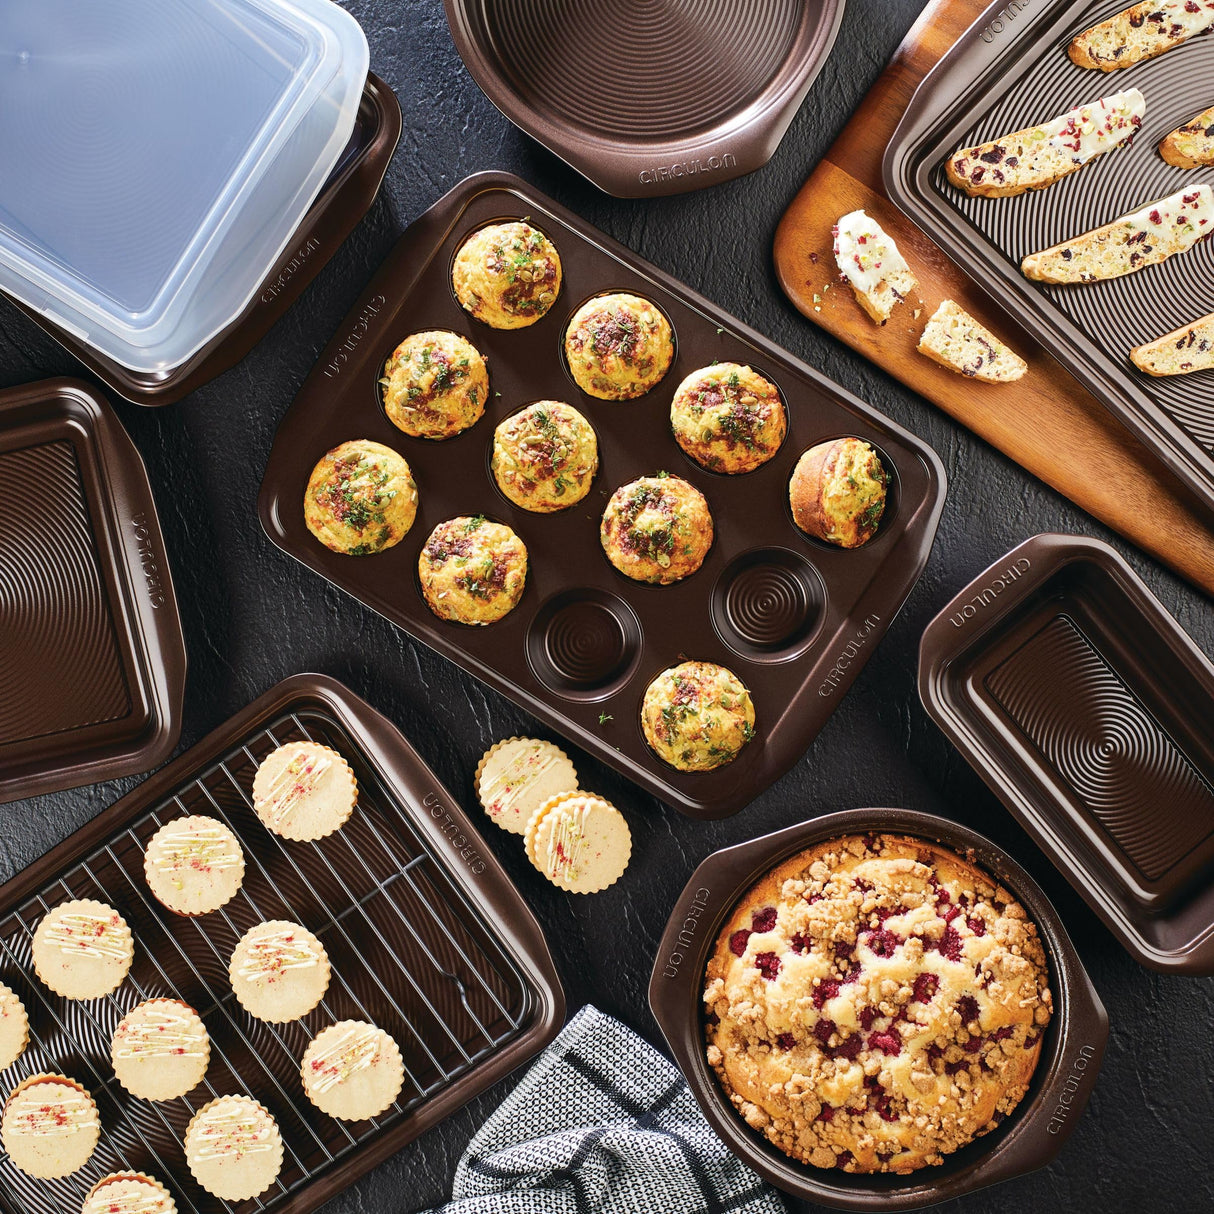 Circulon Nonstick Bakeware Set with Nonstick Bread Pan, Baking Pans, Baking Sheets, Cookie Sheets, Cake Pan and Muffin Pan / Cupcake Pan - 10 Piece, Chocolate Brown